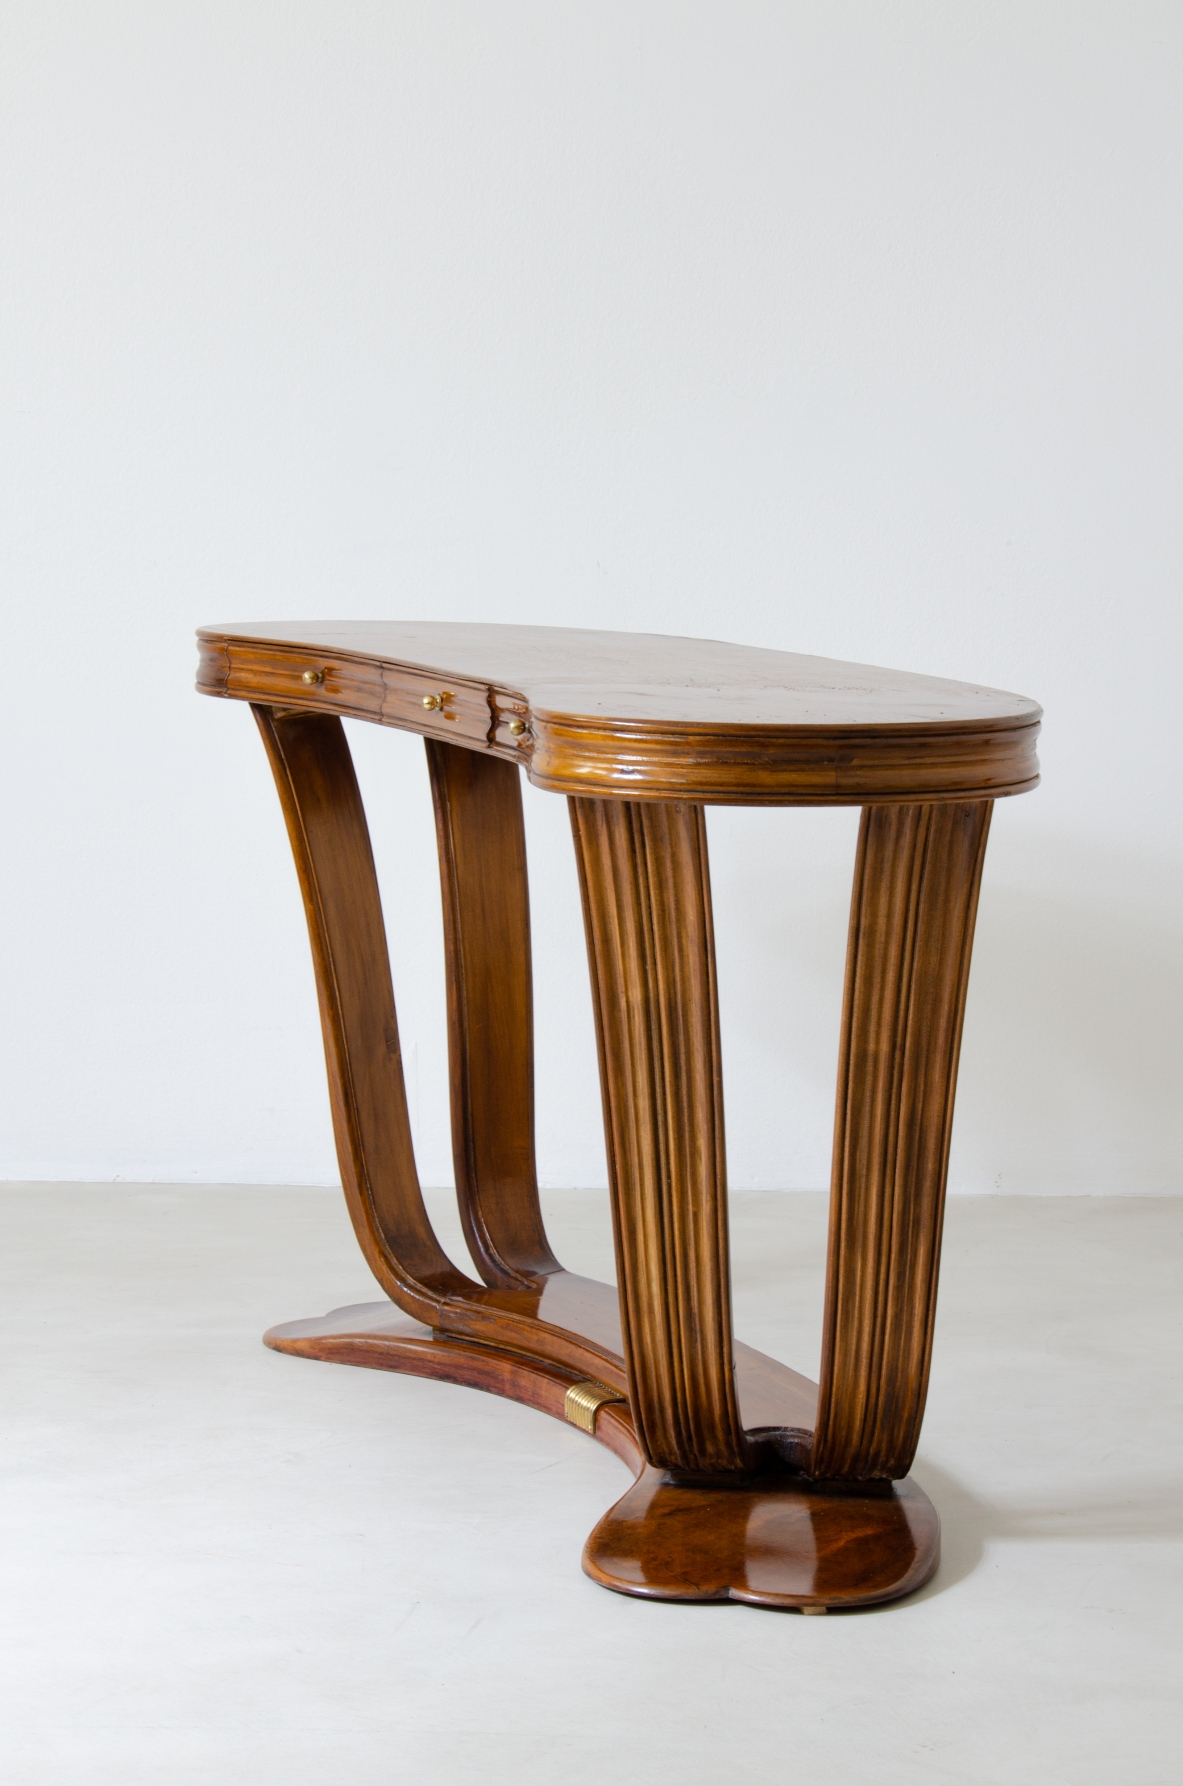 Osvaldo Borsani, elegante console in legno laccato con piano in vetro opaline. Prod. Arredamenti Borsani 1940ca.